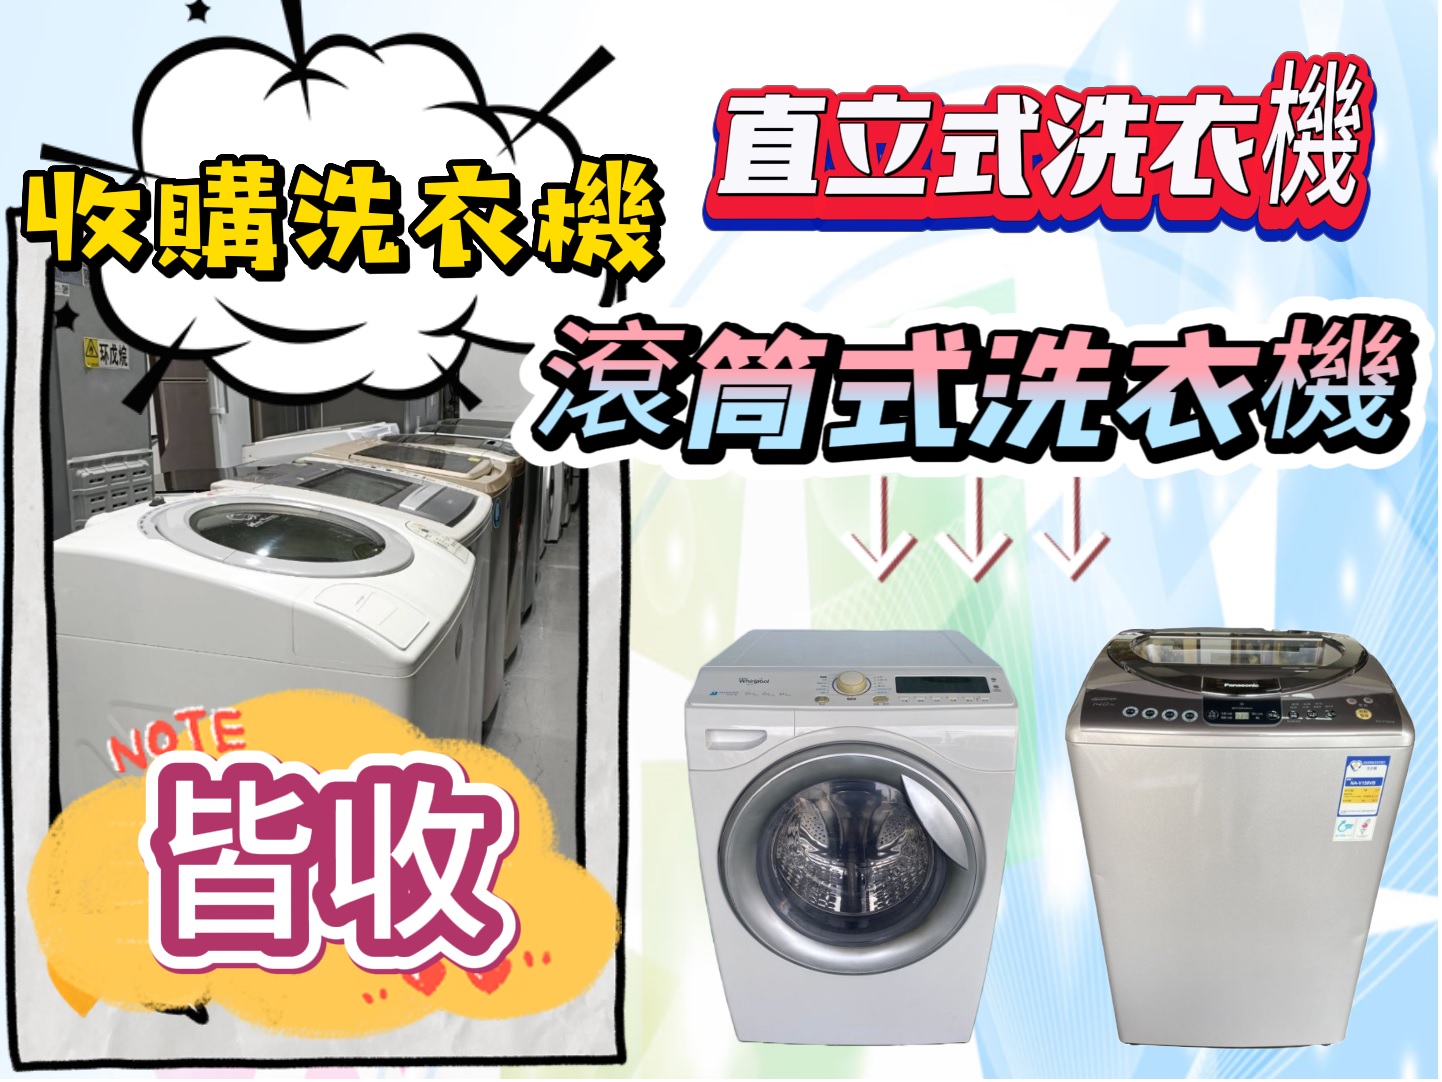 新竹~專業收購二手家電~冷氣 冰箱 洗衣機 現金收購免費搬運0967060888 - 20230606133324-42139287.jpg(圖)